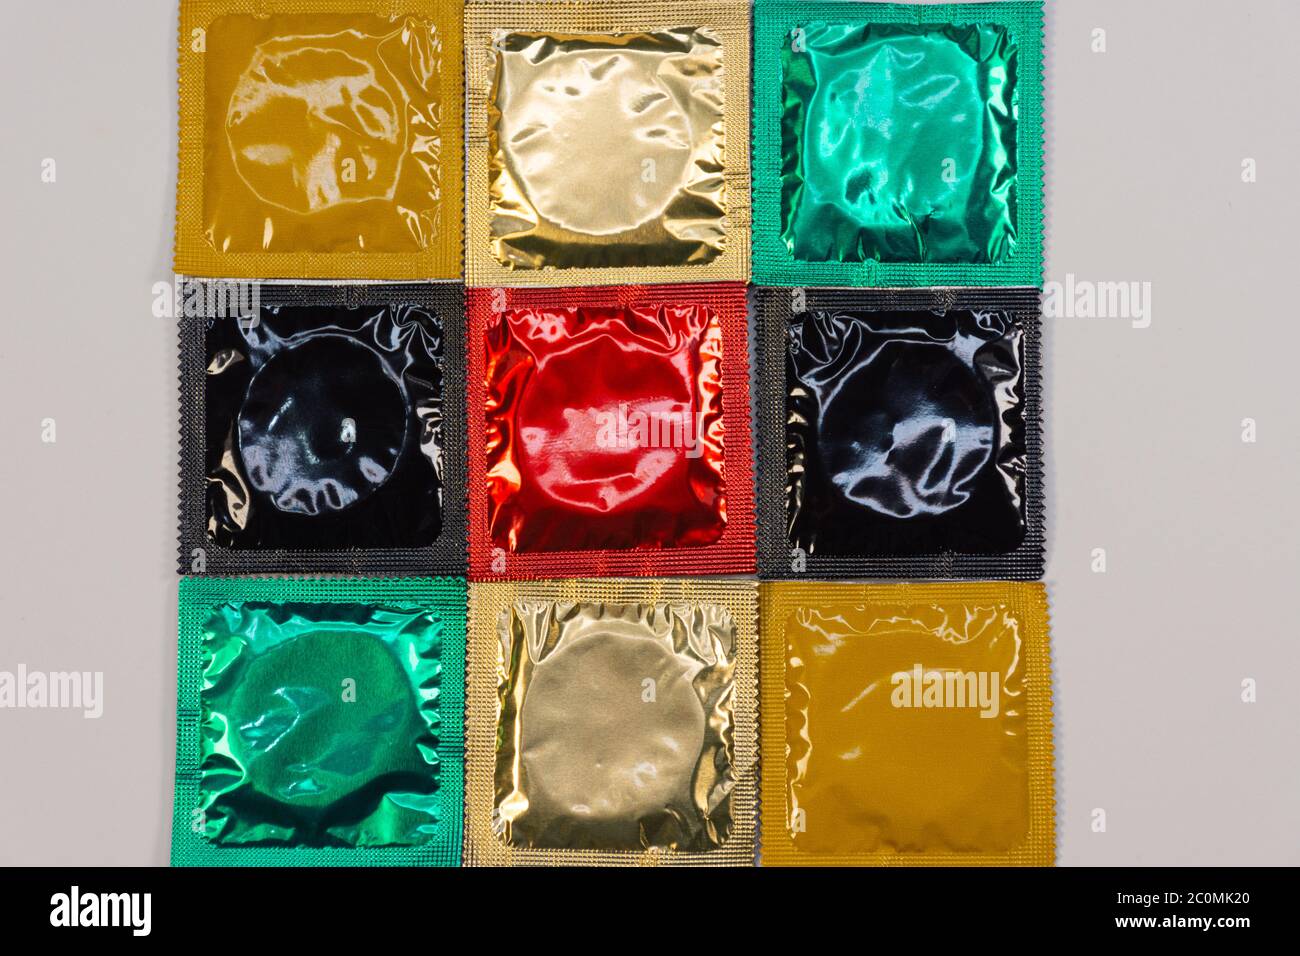 Verkaufen benutzte kondome Benutzte Kondome